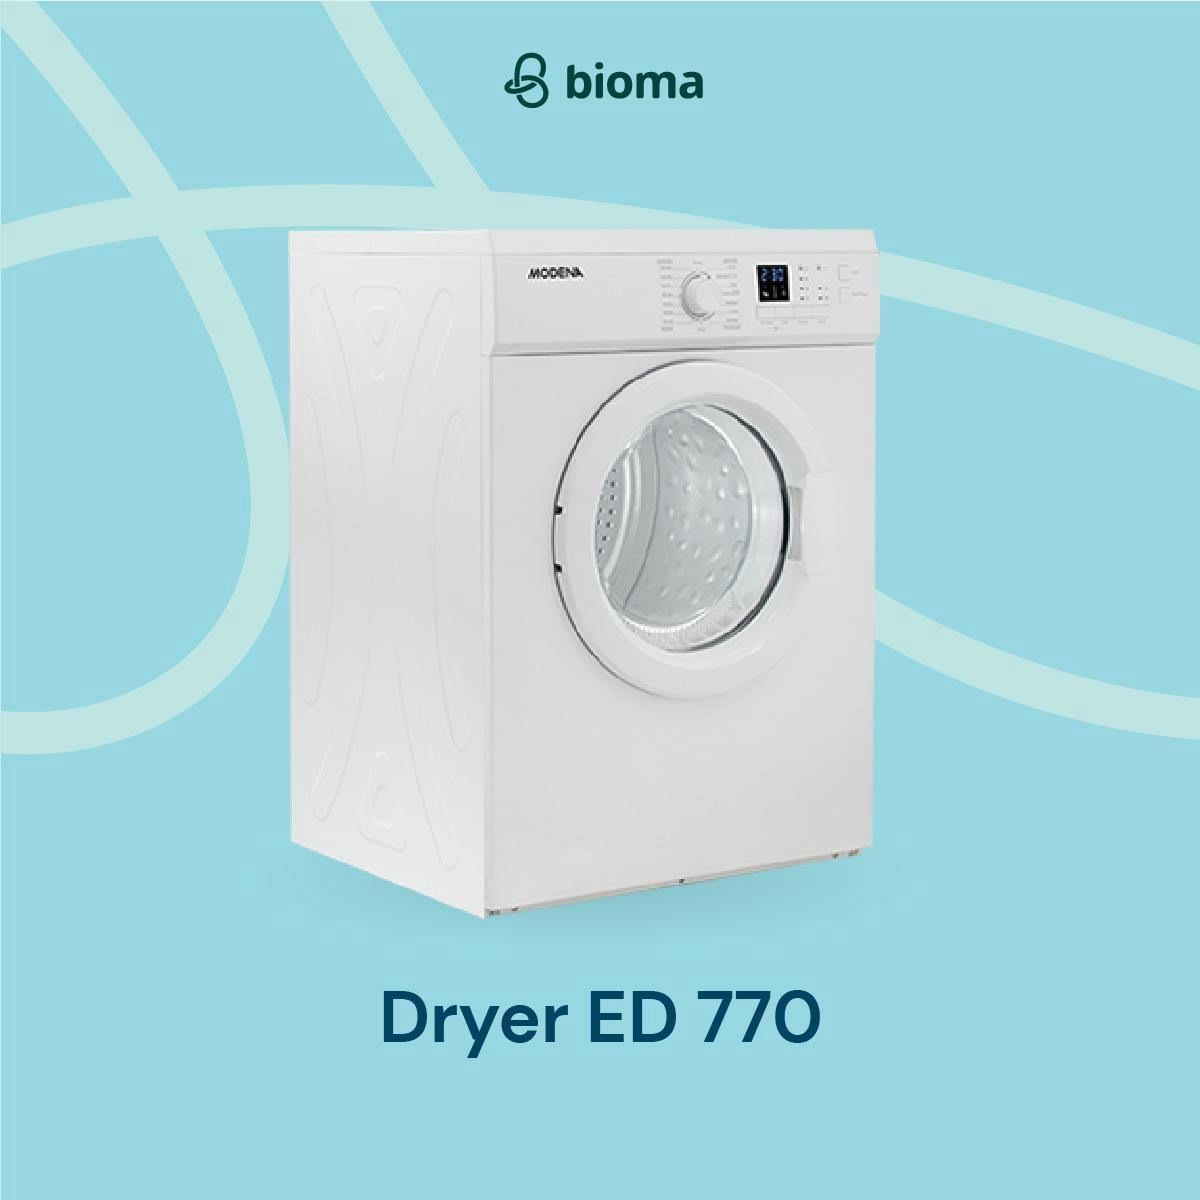 Dryer ED 770